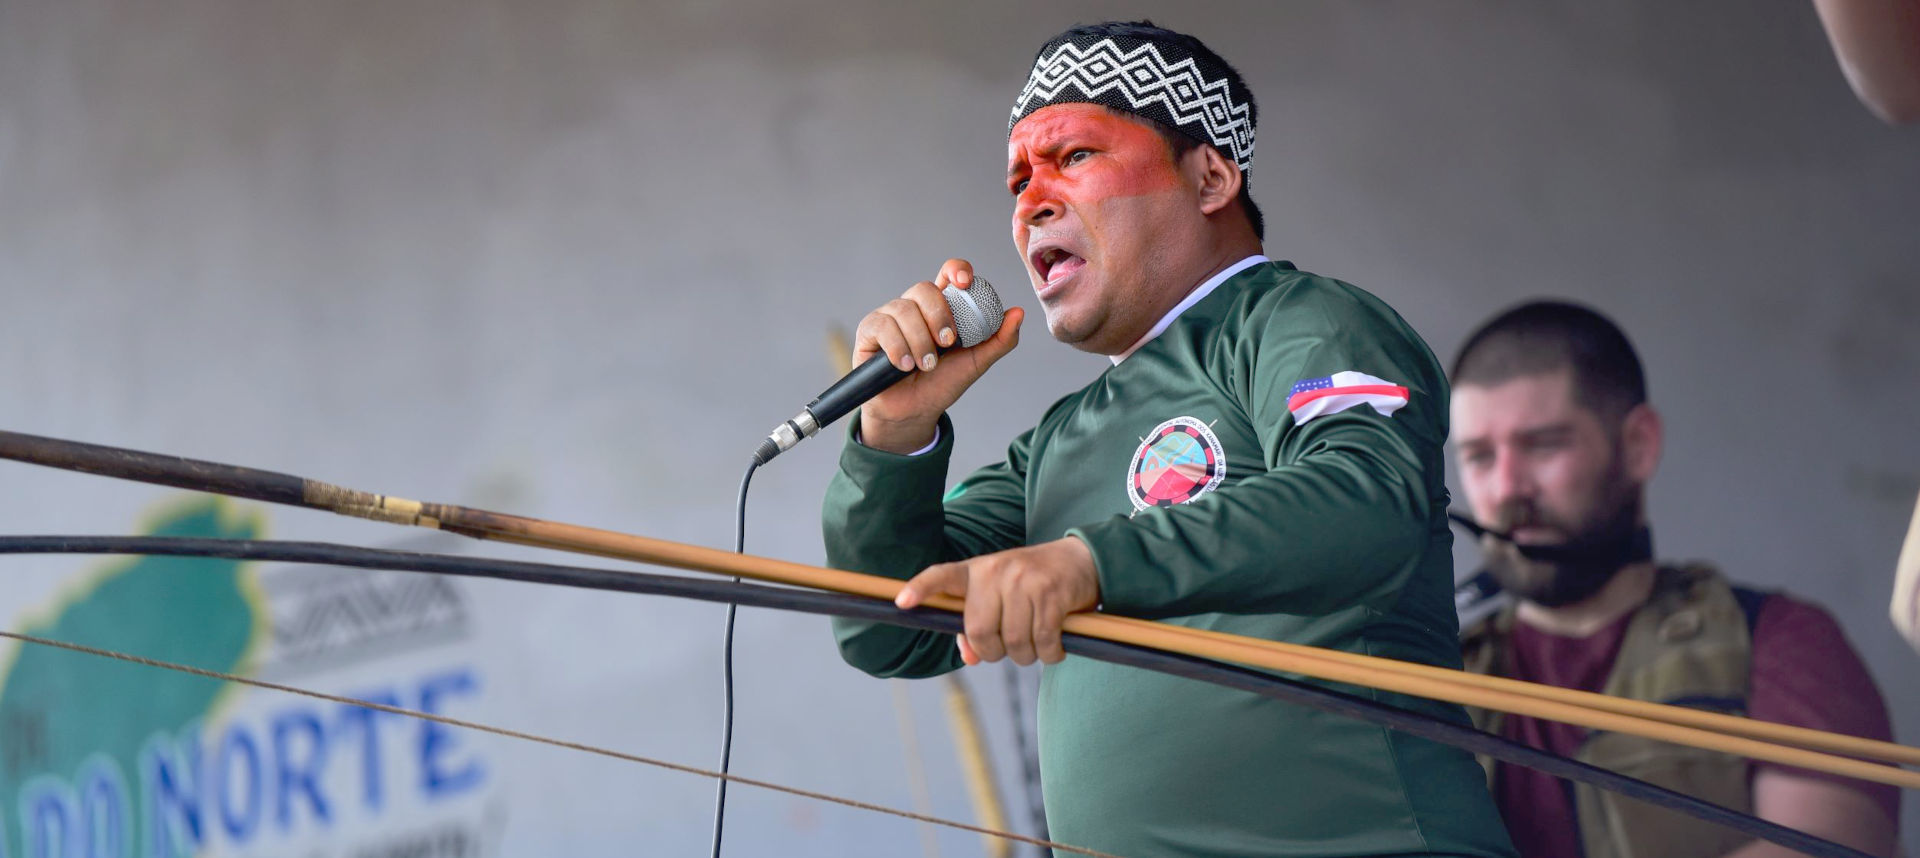 Audiodescrição: imagem colorida, O líder indígena Kura Kanamary falando ao microfone com arco e flecha na outra mão e ao fundo um homem acompanhando com filmadora. (Foto: Antonio Scarpinetti)